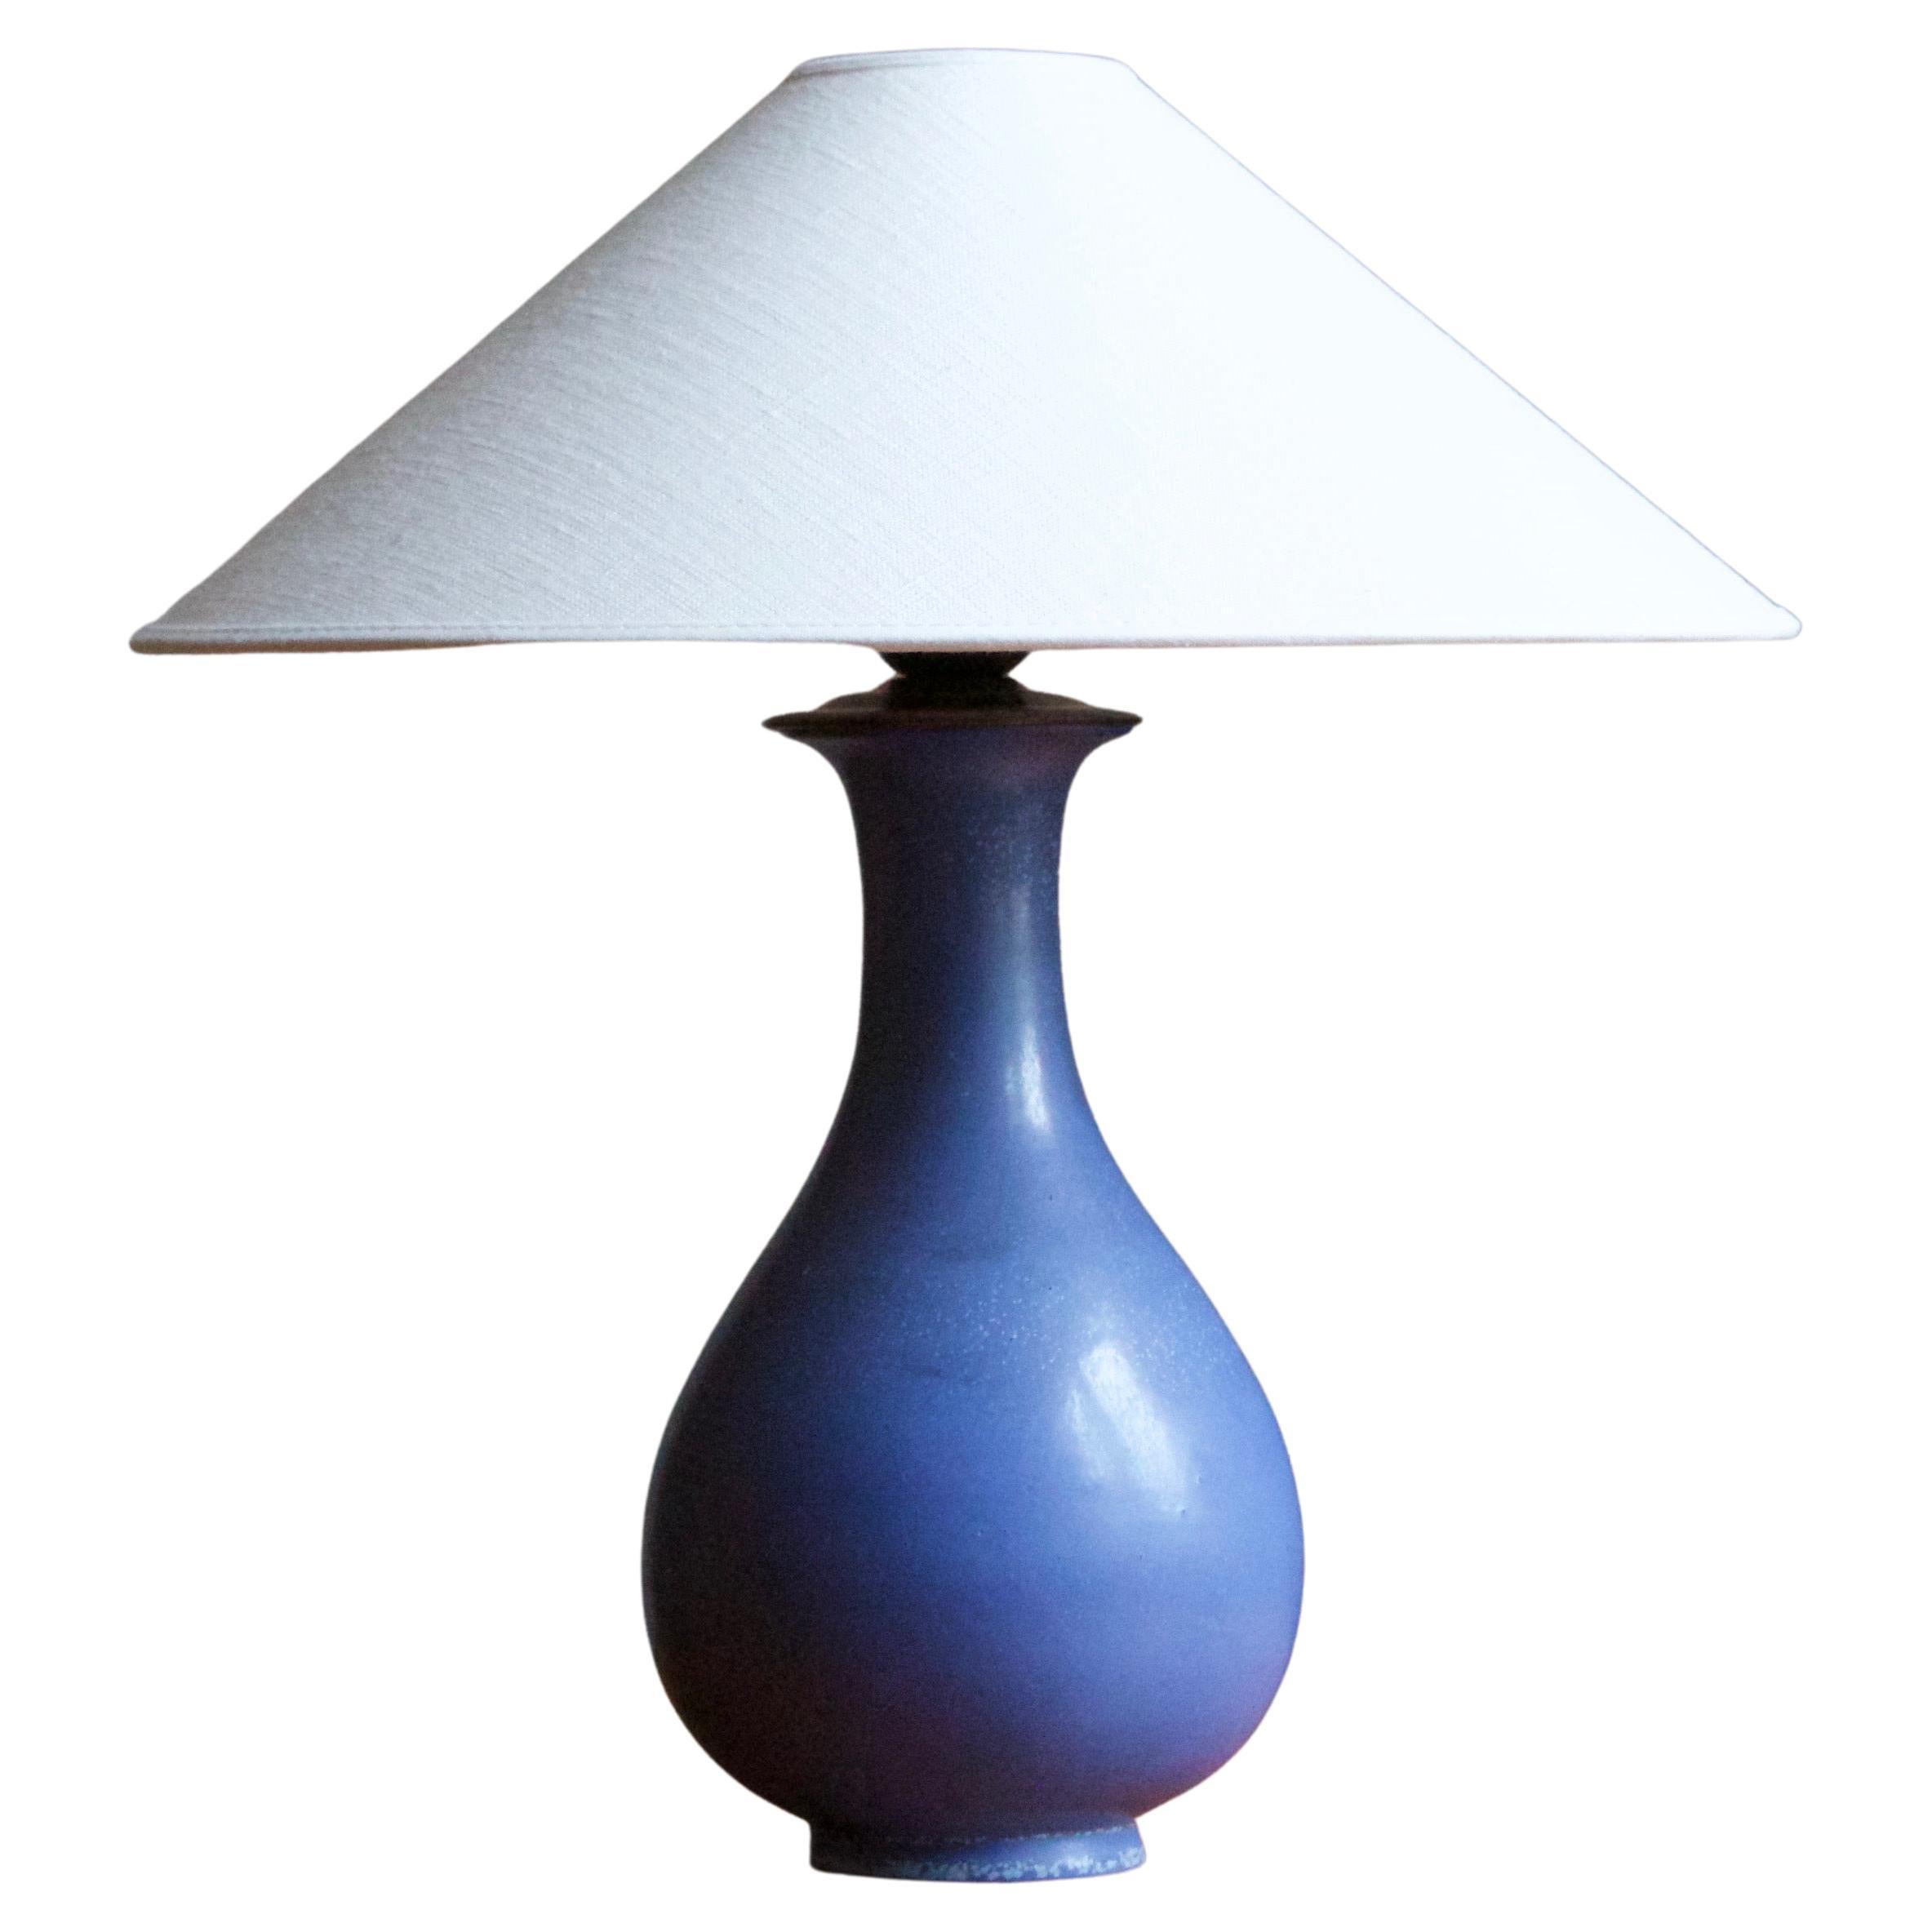 Gunnar Nylund, Table Lamp, Blue Glazed Stoneware, Rörstand, Sweden, 1950s